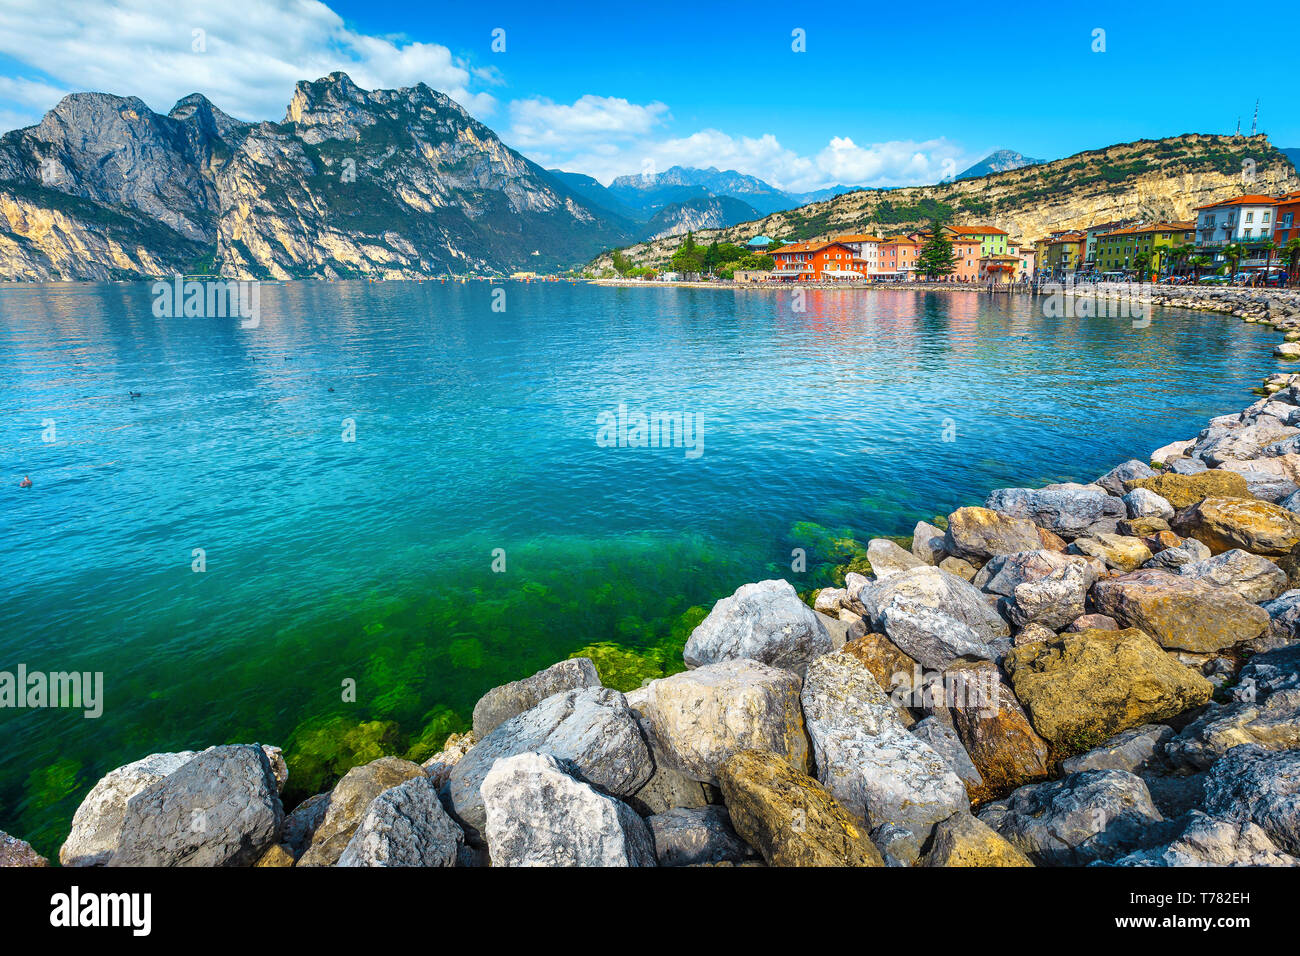 Lungomare roccioso e la città con i suoi edifici colorati, lago di Garda, Torbole, Italia, Europa Foto Stock